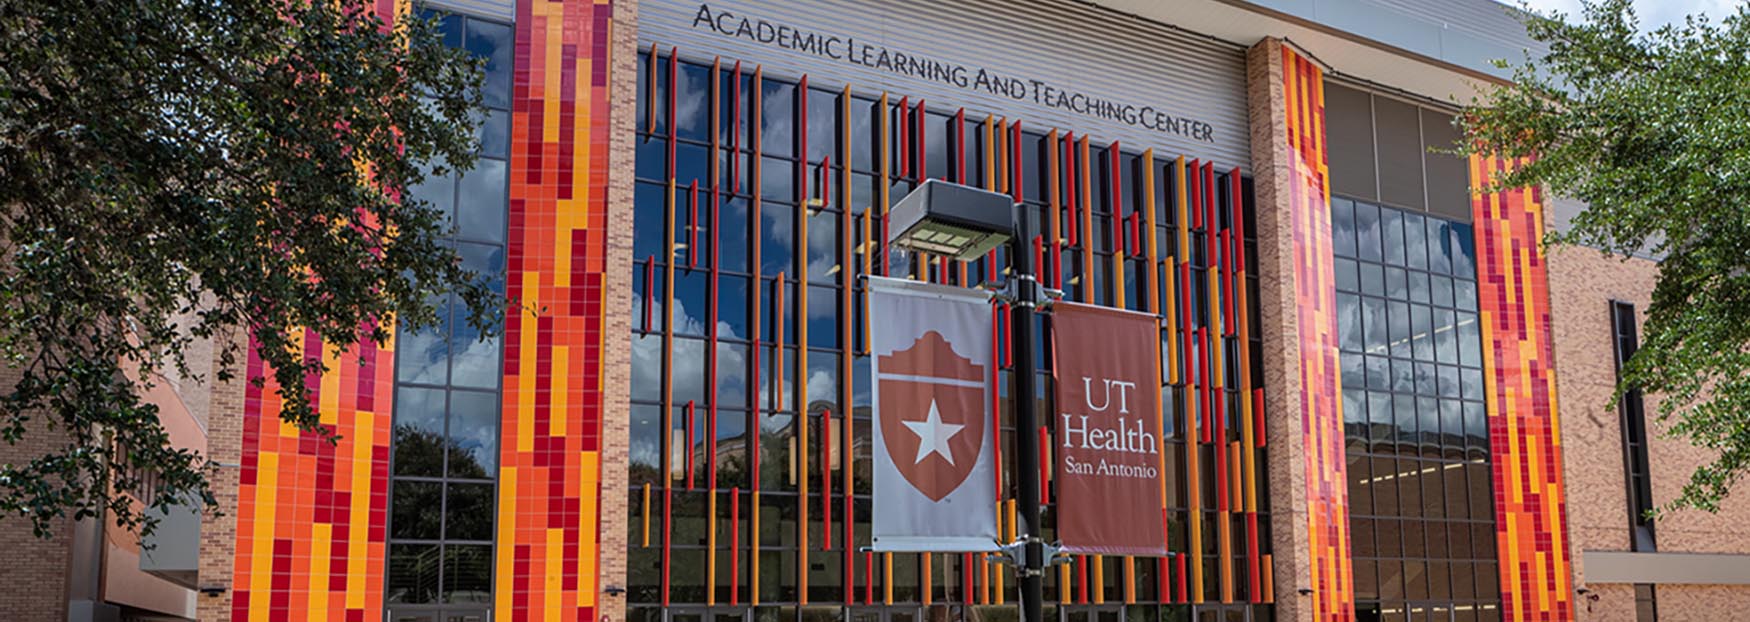 UT Health Academic Learning & Teaching Center building